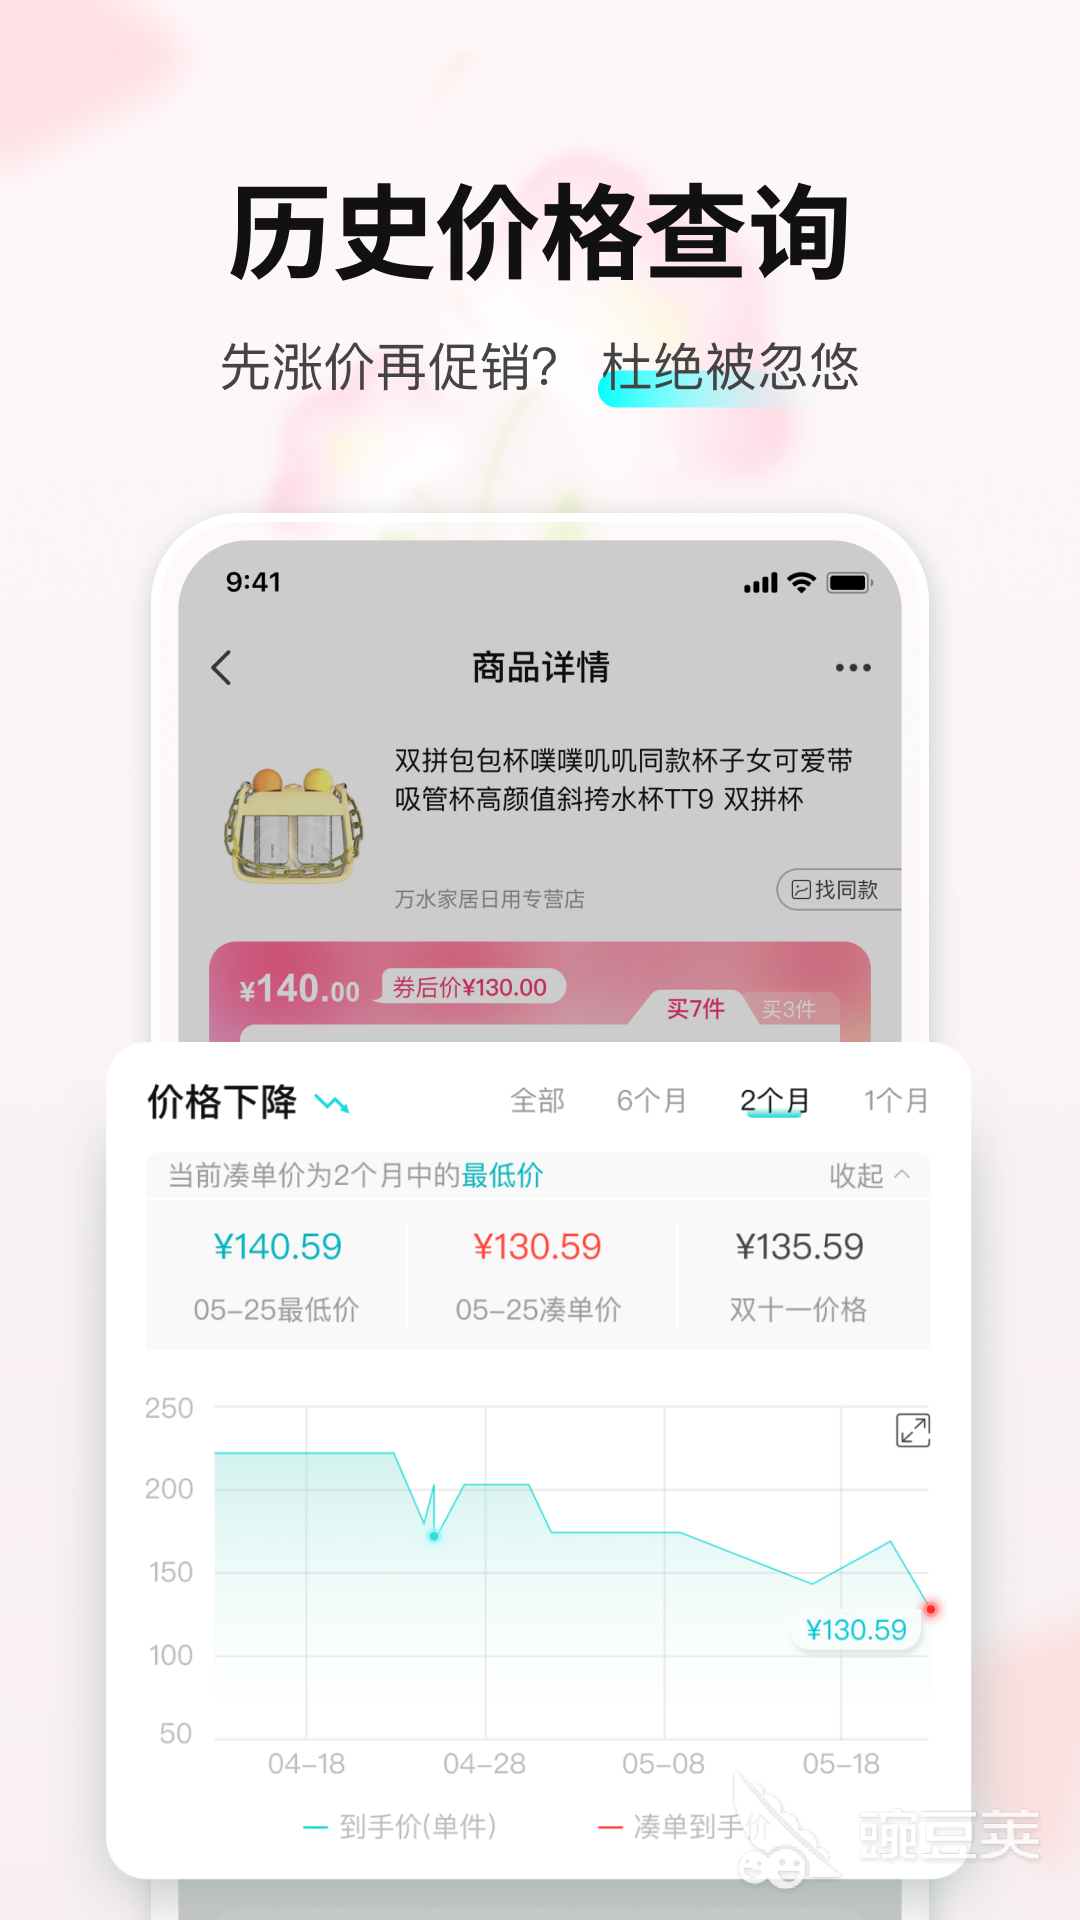 实惠app下载 火爆的实惠APP排行榜